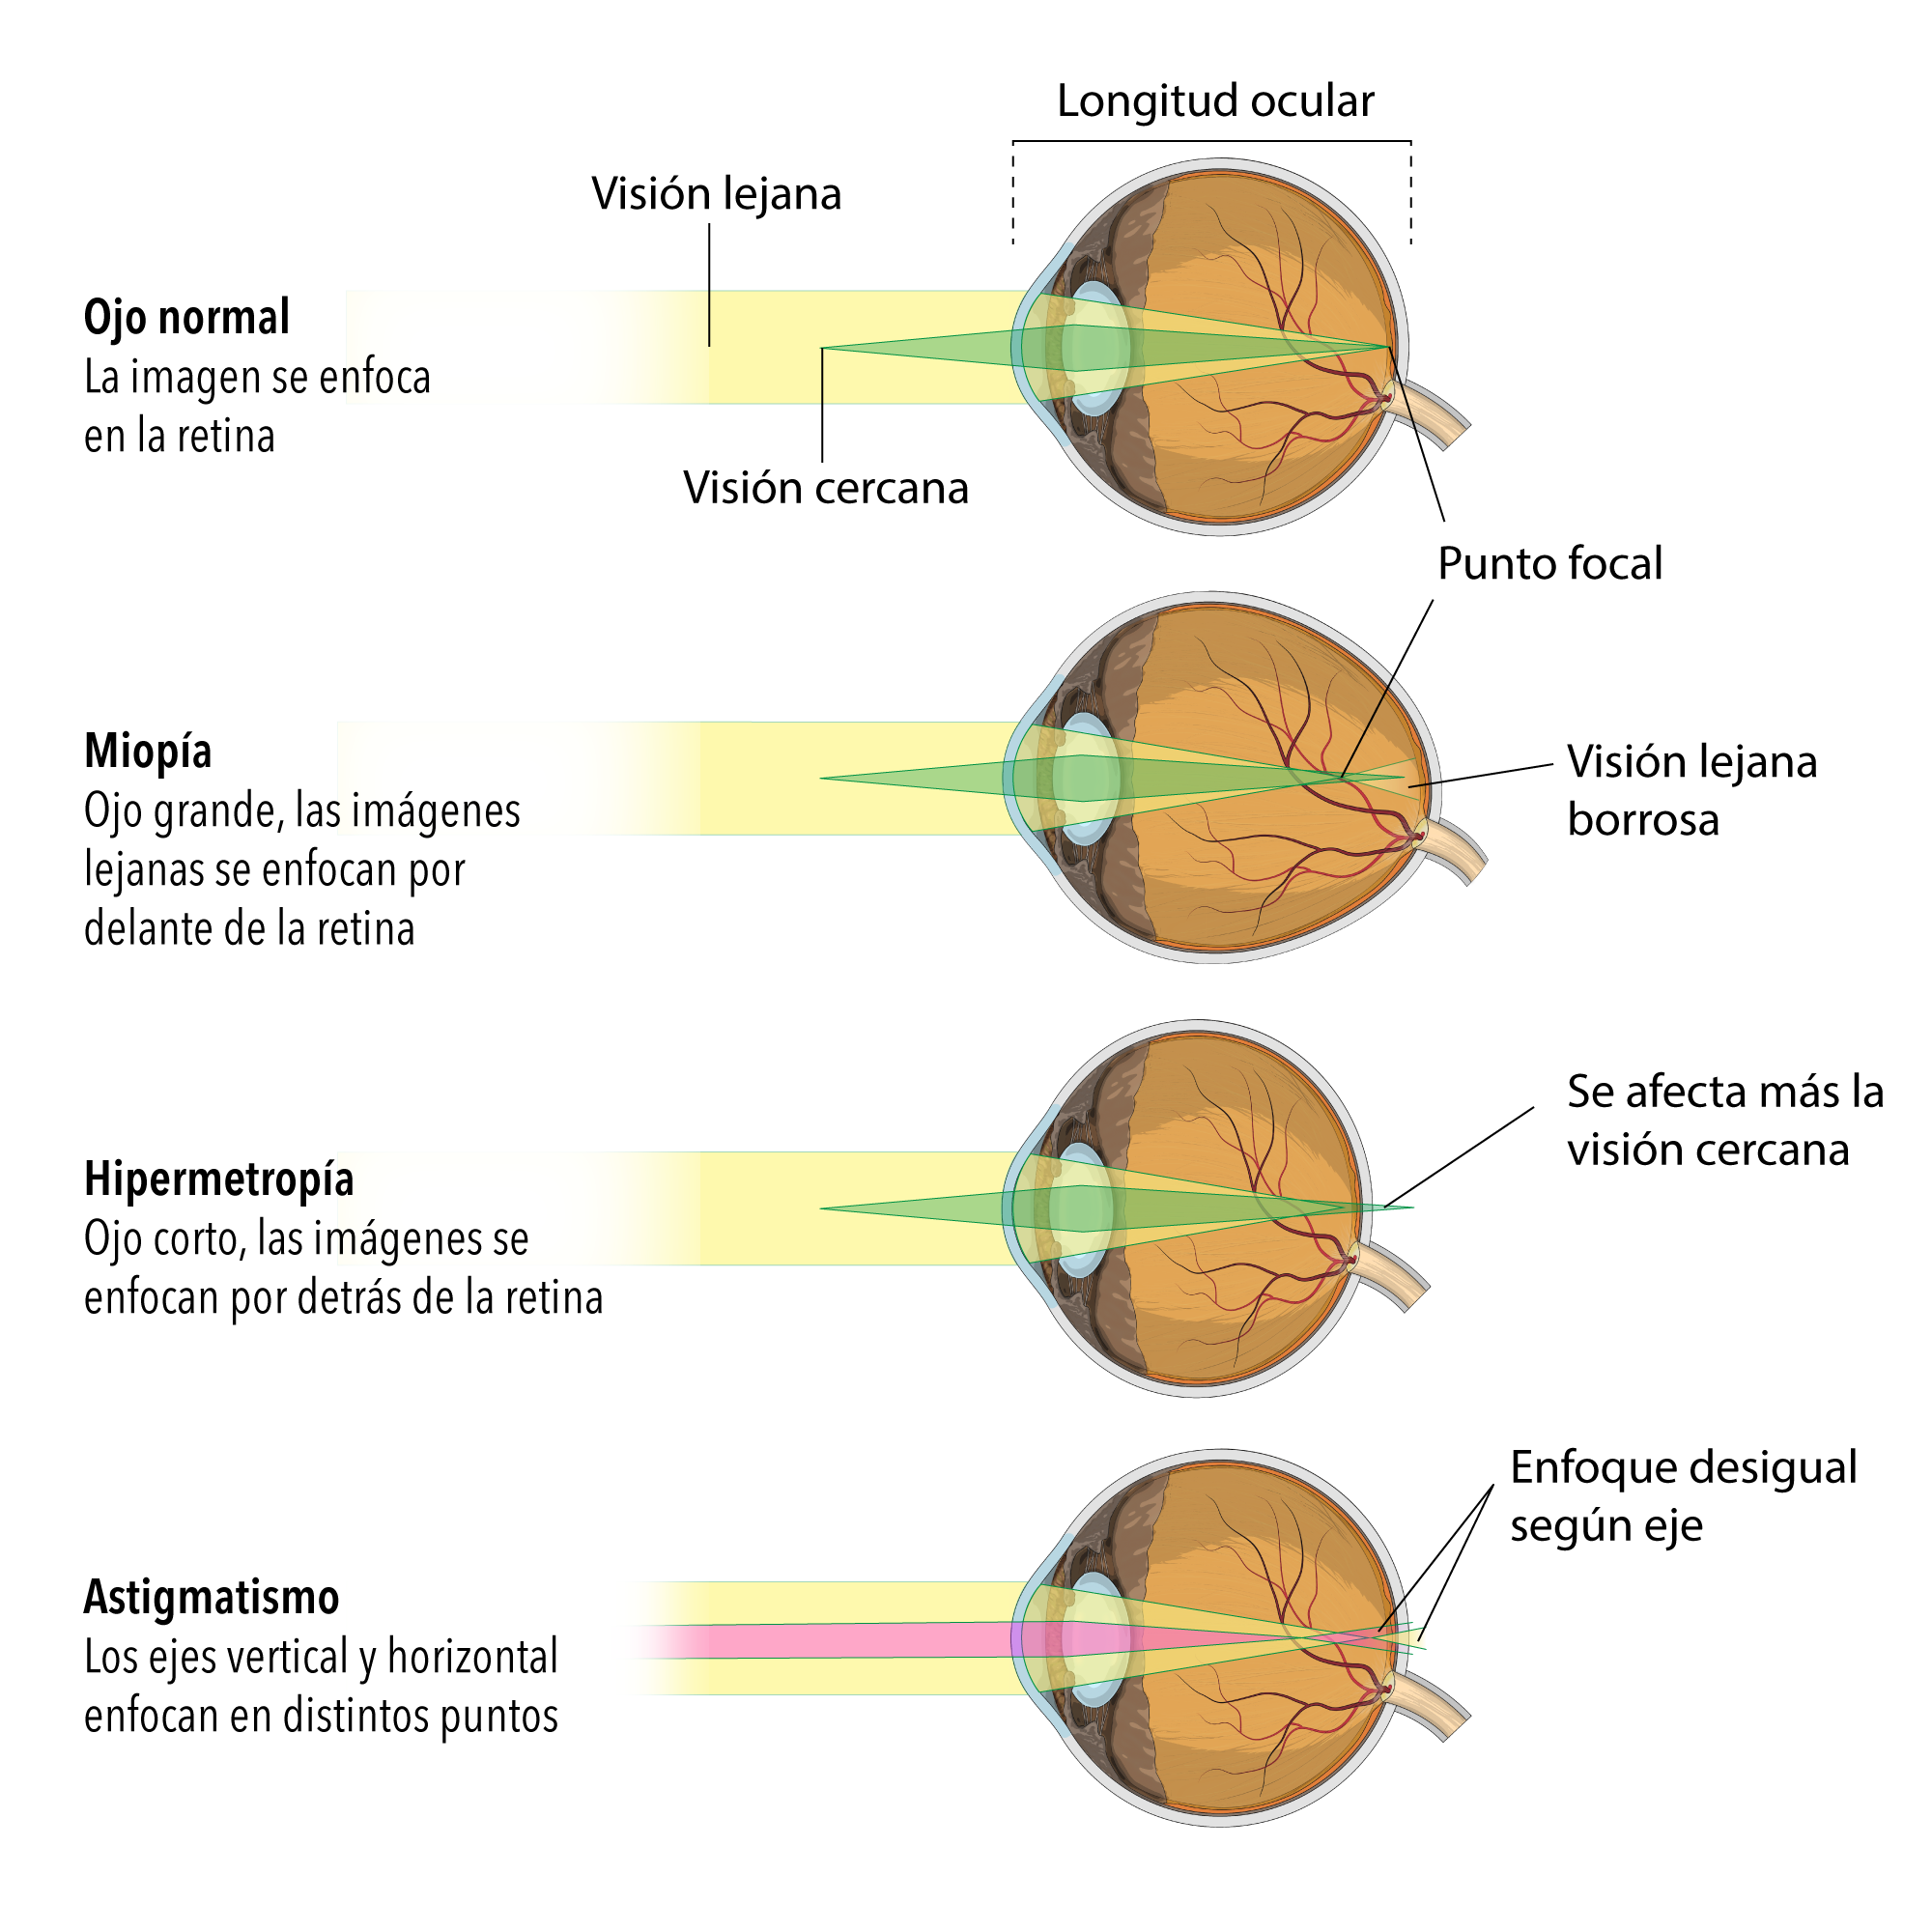 miopía astigmatismo y presbicia)